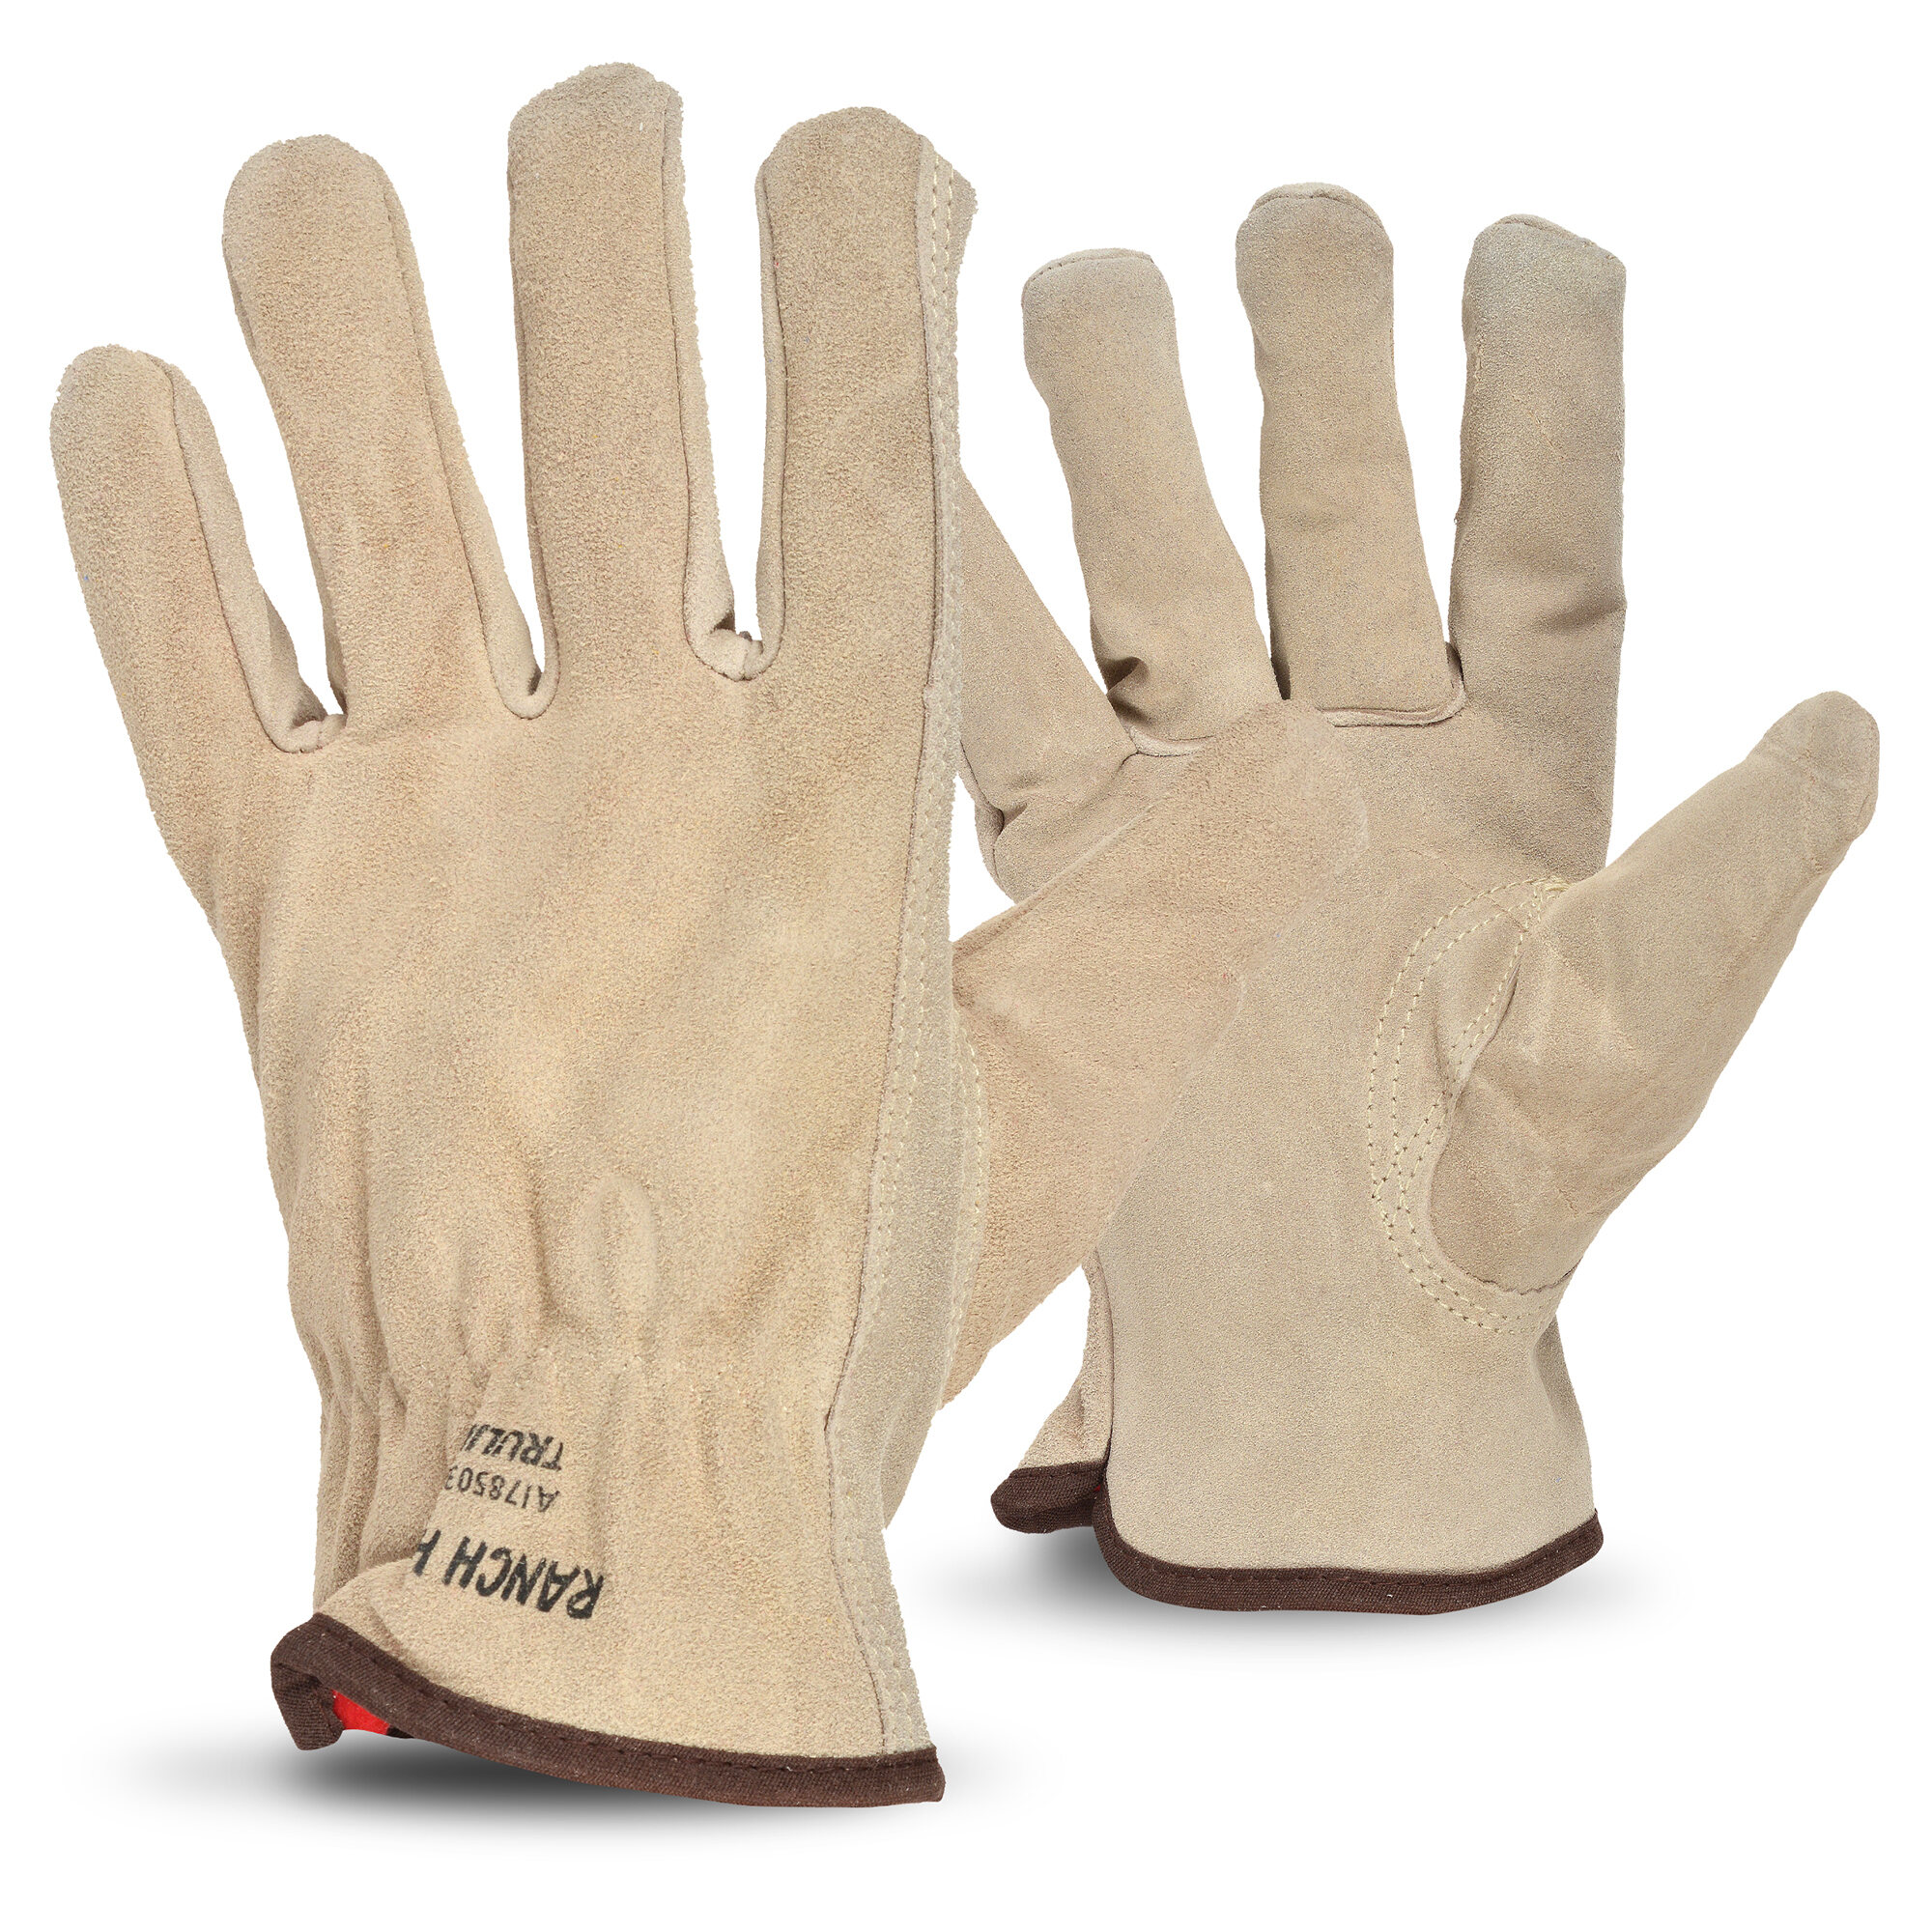 Truline leather work glove